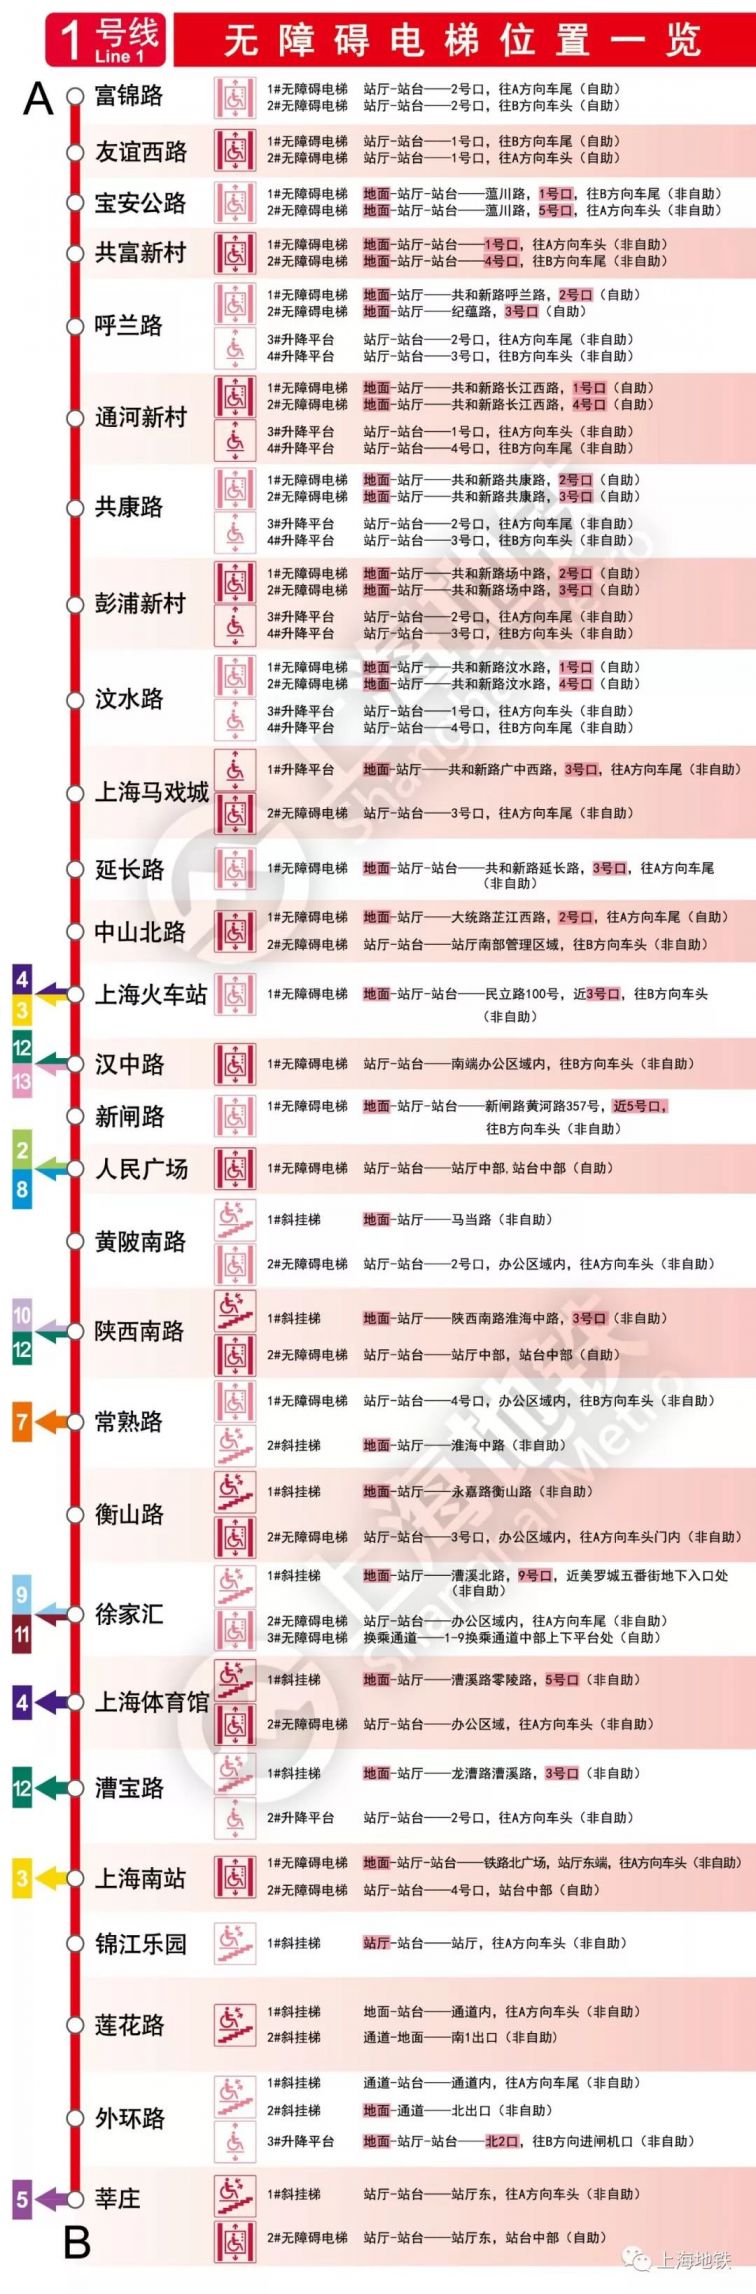 上海地铁1号线时间图片